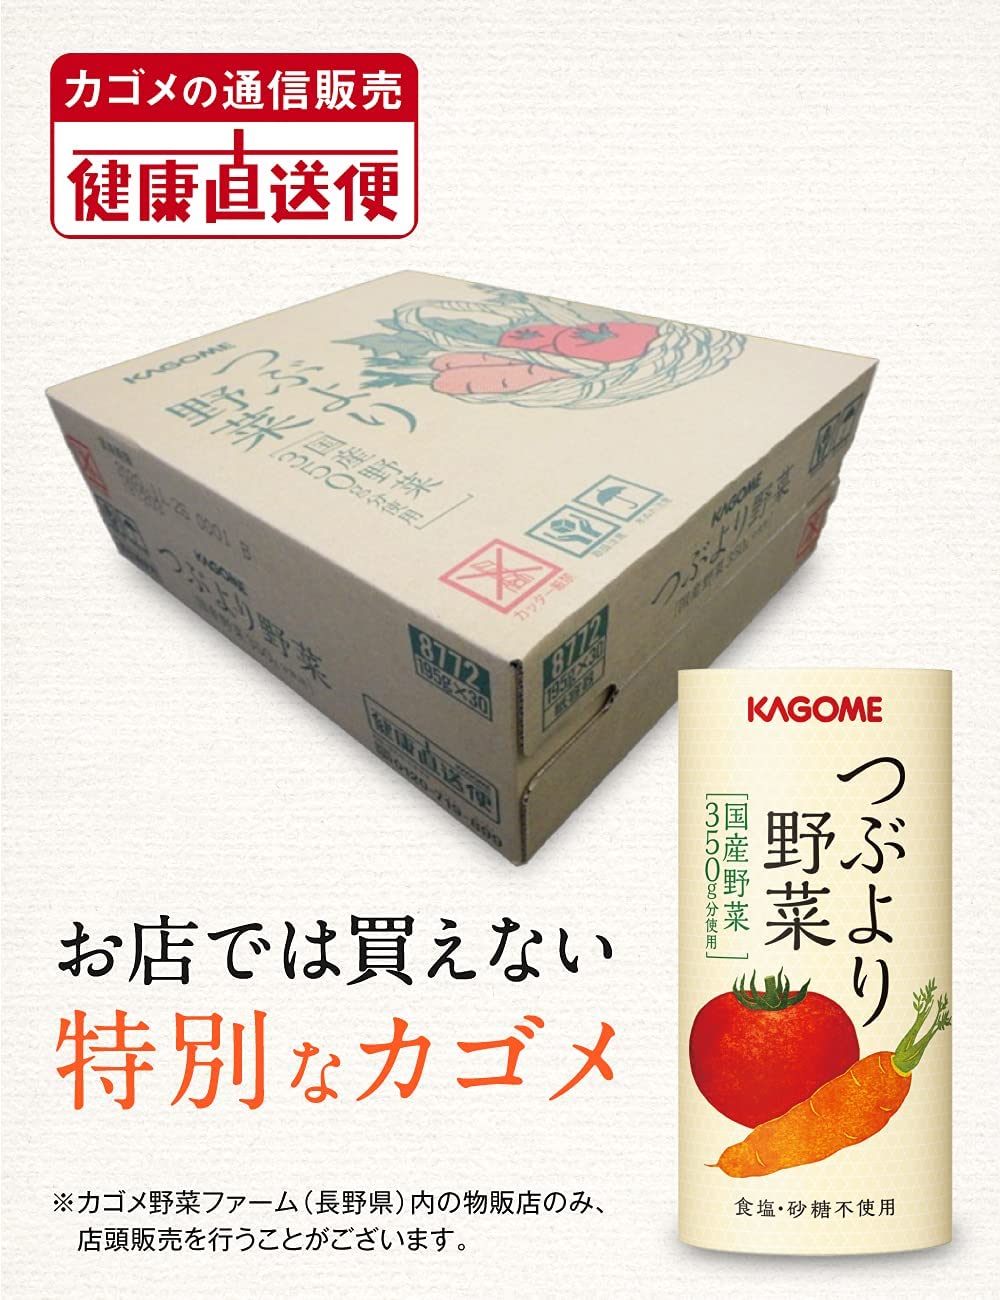 【カゴメ公式】つぶより野菜(野菜ジュース)195g×30本/1ケース